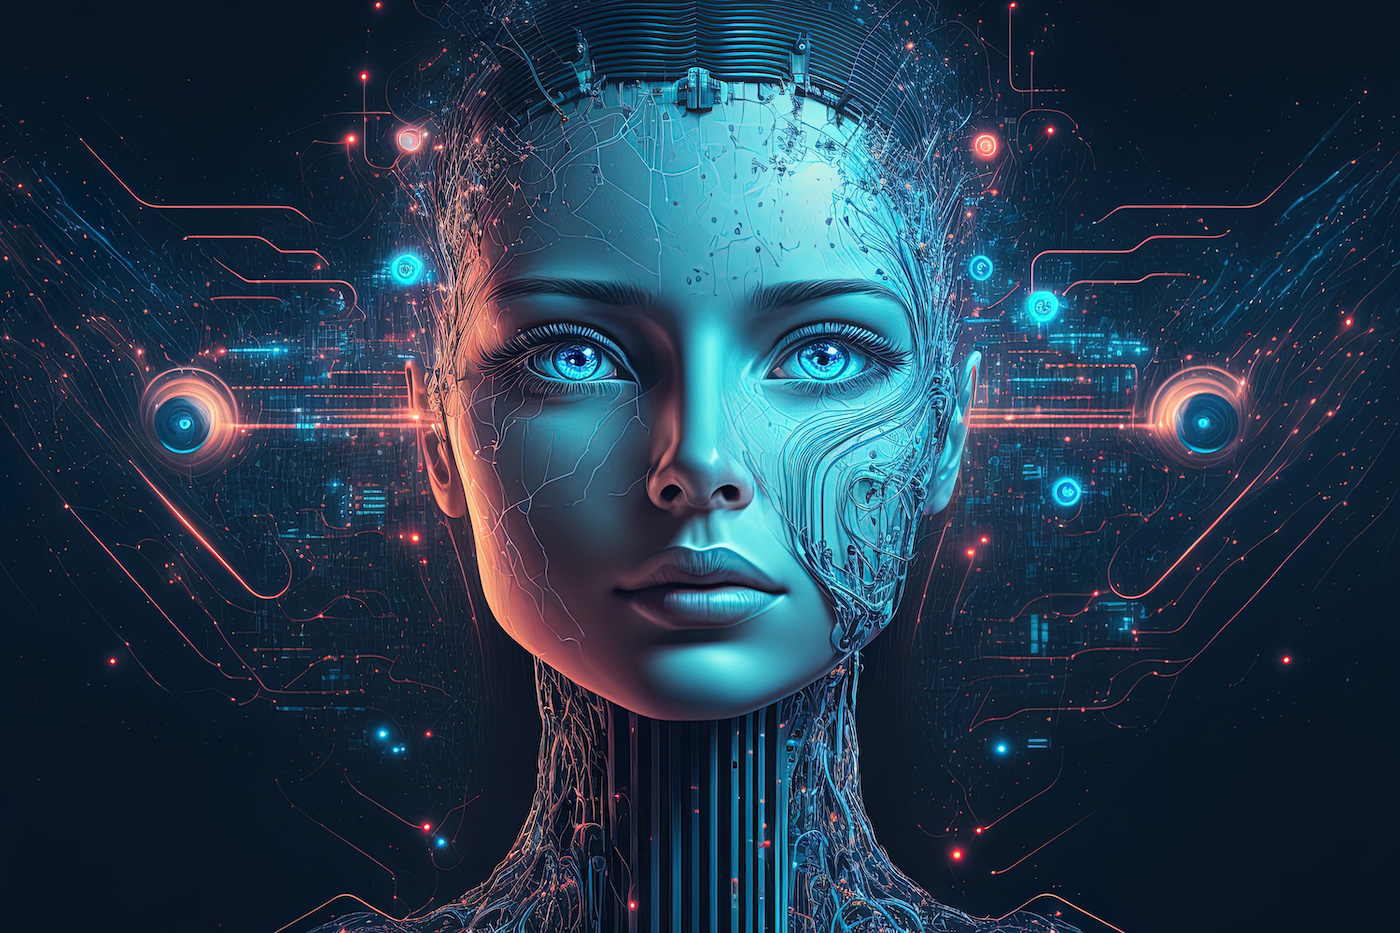 这是一张描绘半人脸半机器人头像的数字艺术图像，展示了高科技与人类特征的融合，具有未来感和科幻色彩。